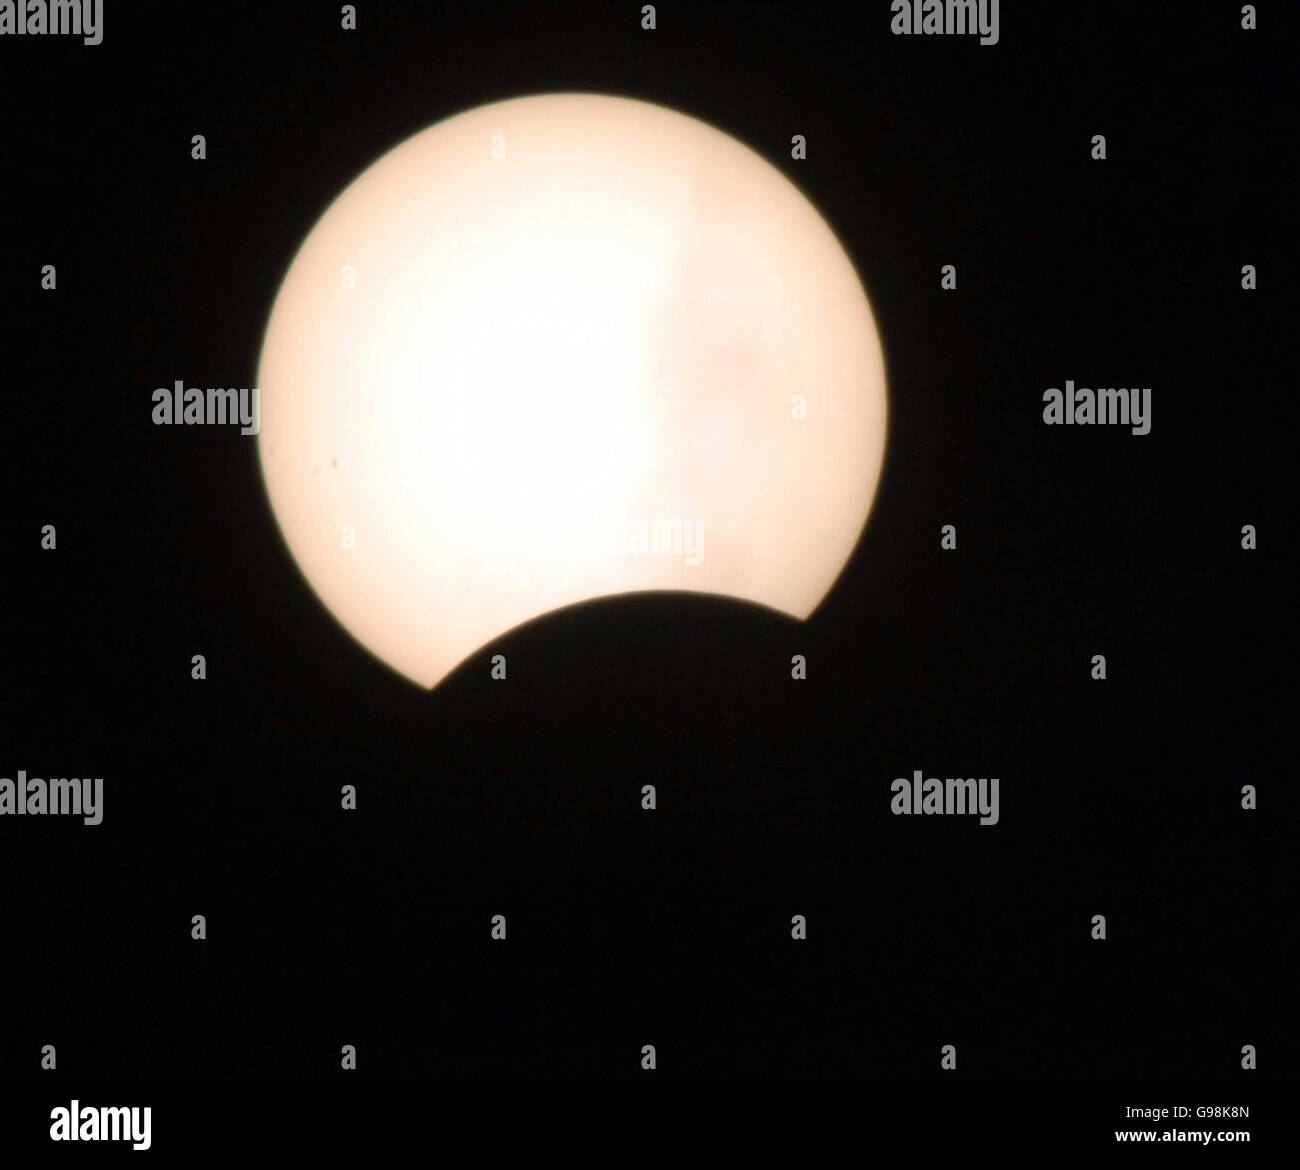 La lune passant devant le soleil pendant une éclipse partielle vue de Bristol, mercredi 29 mars 2006. Le médecin-chef du gouvernement, Liam Donaldson, a averti les gens de ne pas regarder directement l'événement solaire de peur de nuire à leur vue. Au lieu de cela, les experts recommandent de projeter l'eclipse à l'aide d'une caméra à trou d'épingle - deux morceaux de carte avec un trou dans le haut pour que l'image puisse briller. Voir PA Story SCIENCE Eclipse. APPUYEZ SUR ASSOCIATION photo. Le crédit photo devrait se lire comme suit : Barry Batchelor/PA. Banque D'Images